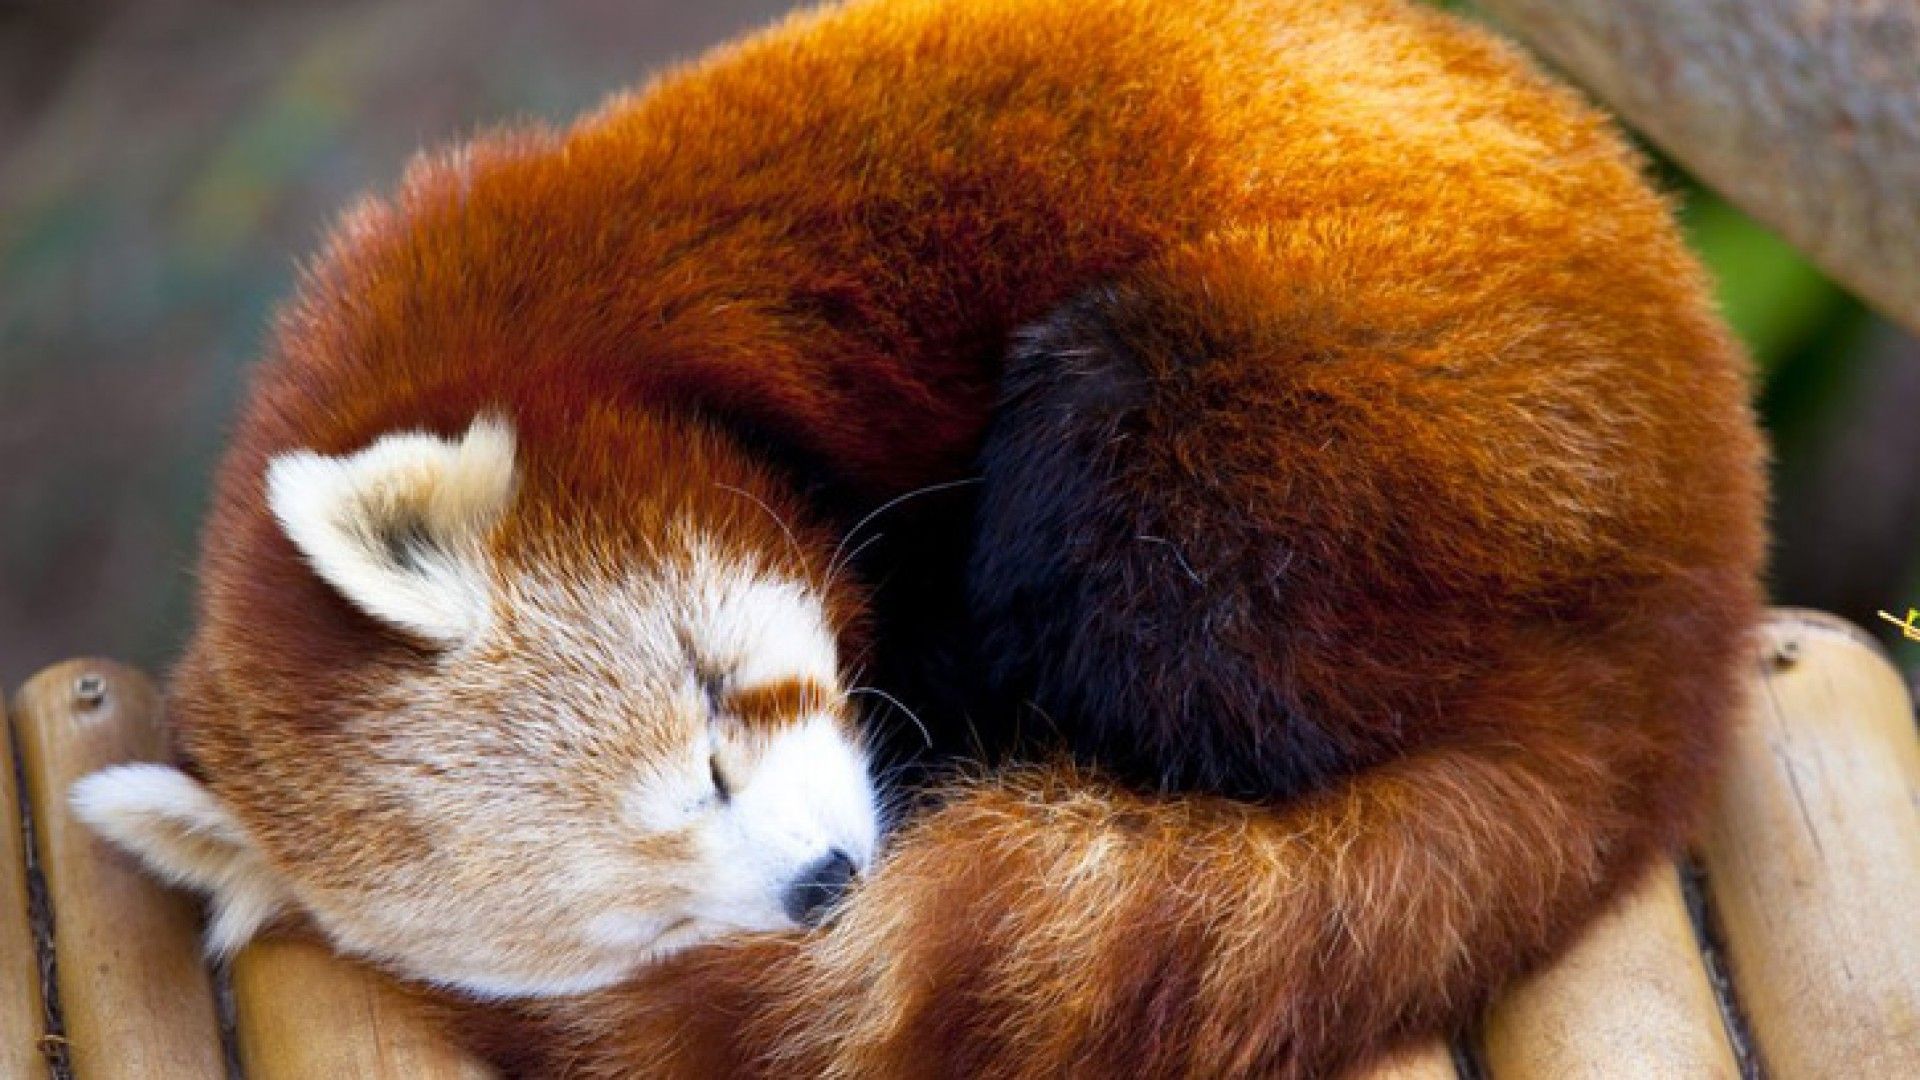 Baby Red Pandas Wallpaper. Red panda, Red panda baby, Red panda image